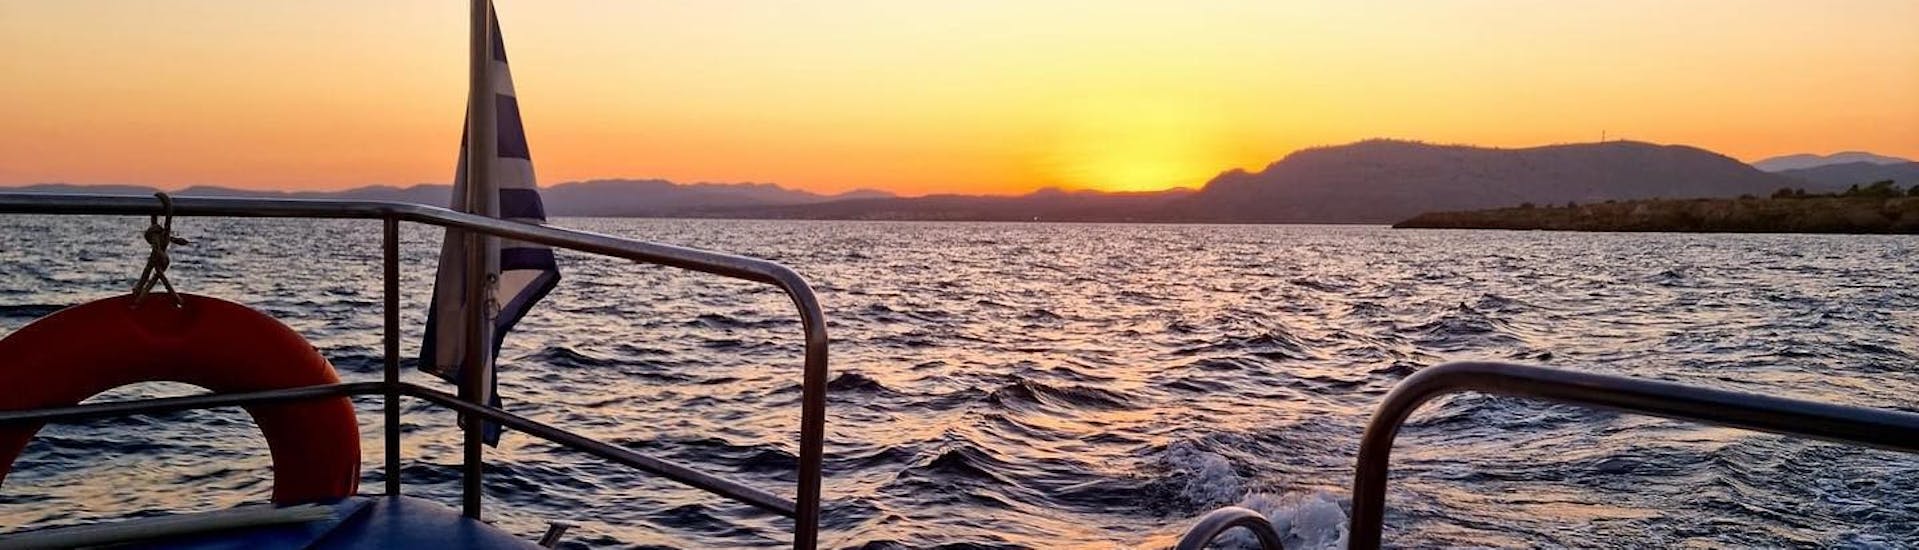 Le soleil se couche lors de la Balade en bateau à fond de verre au coucher du soleil à Pefkos.